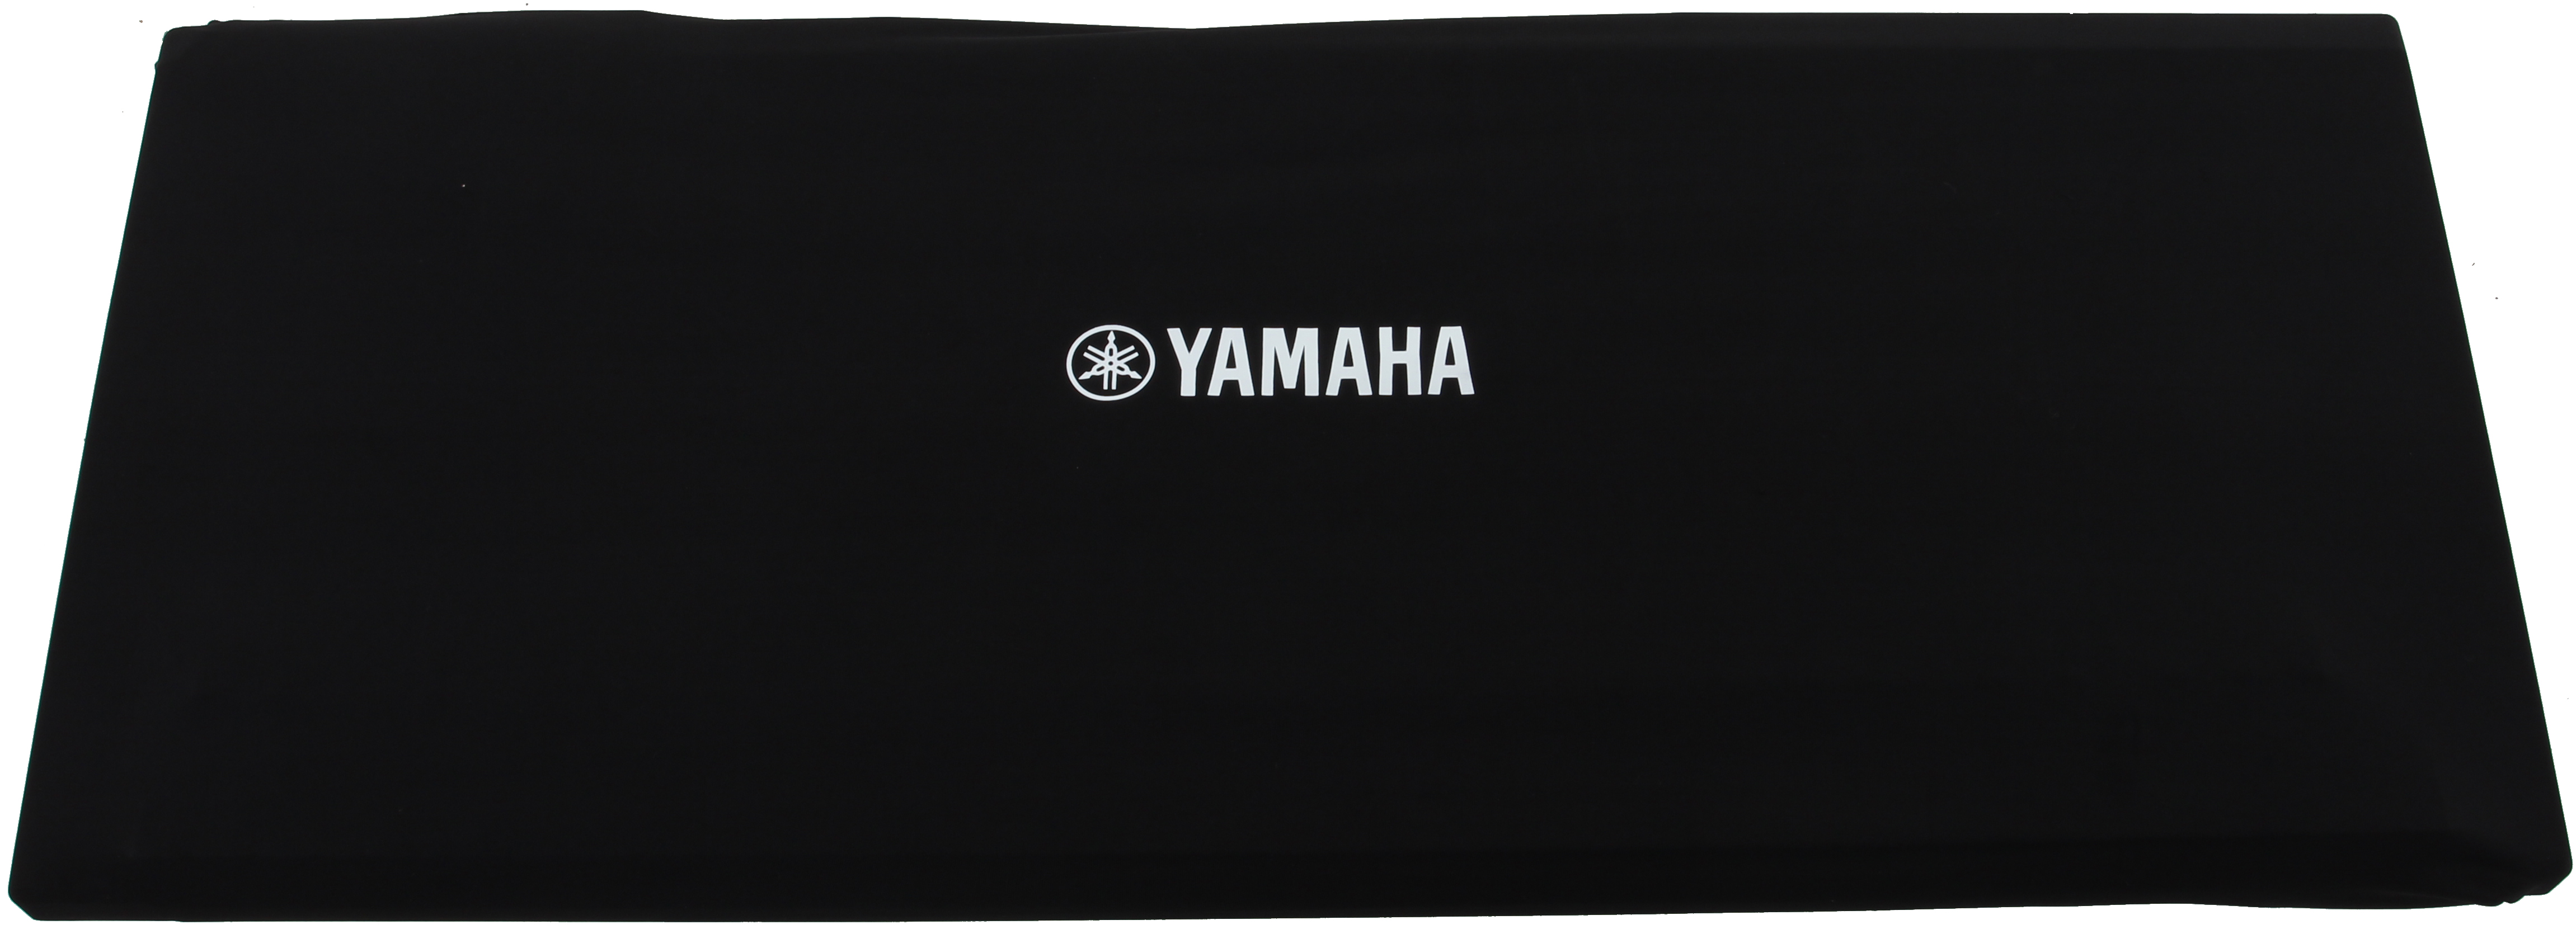 Yamaha DC11A Dust Cover 121 x 40,5 x 15